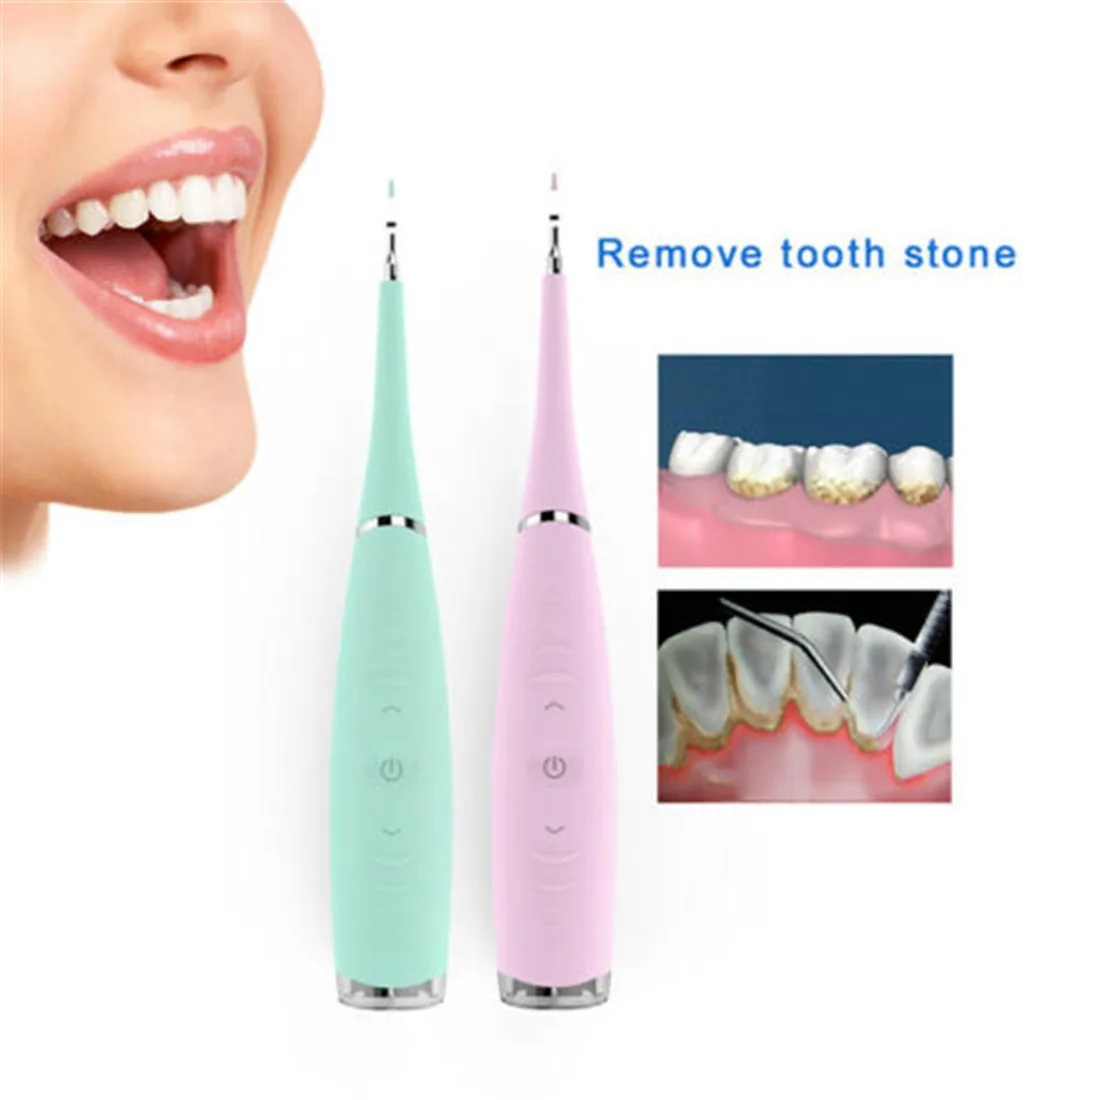 Новейший стильный модный портативный Электрический стоматологический инструмент для удаления зубного камня, зубного камня, зубного налета, набор инструментов для отбеливания зубов